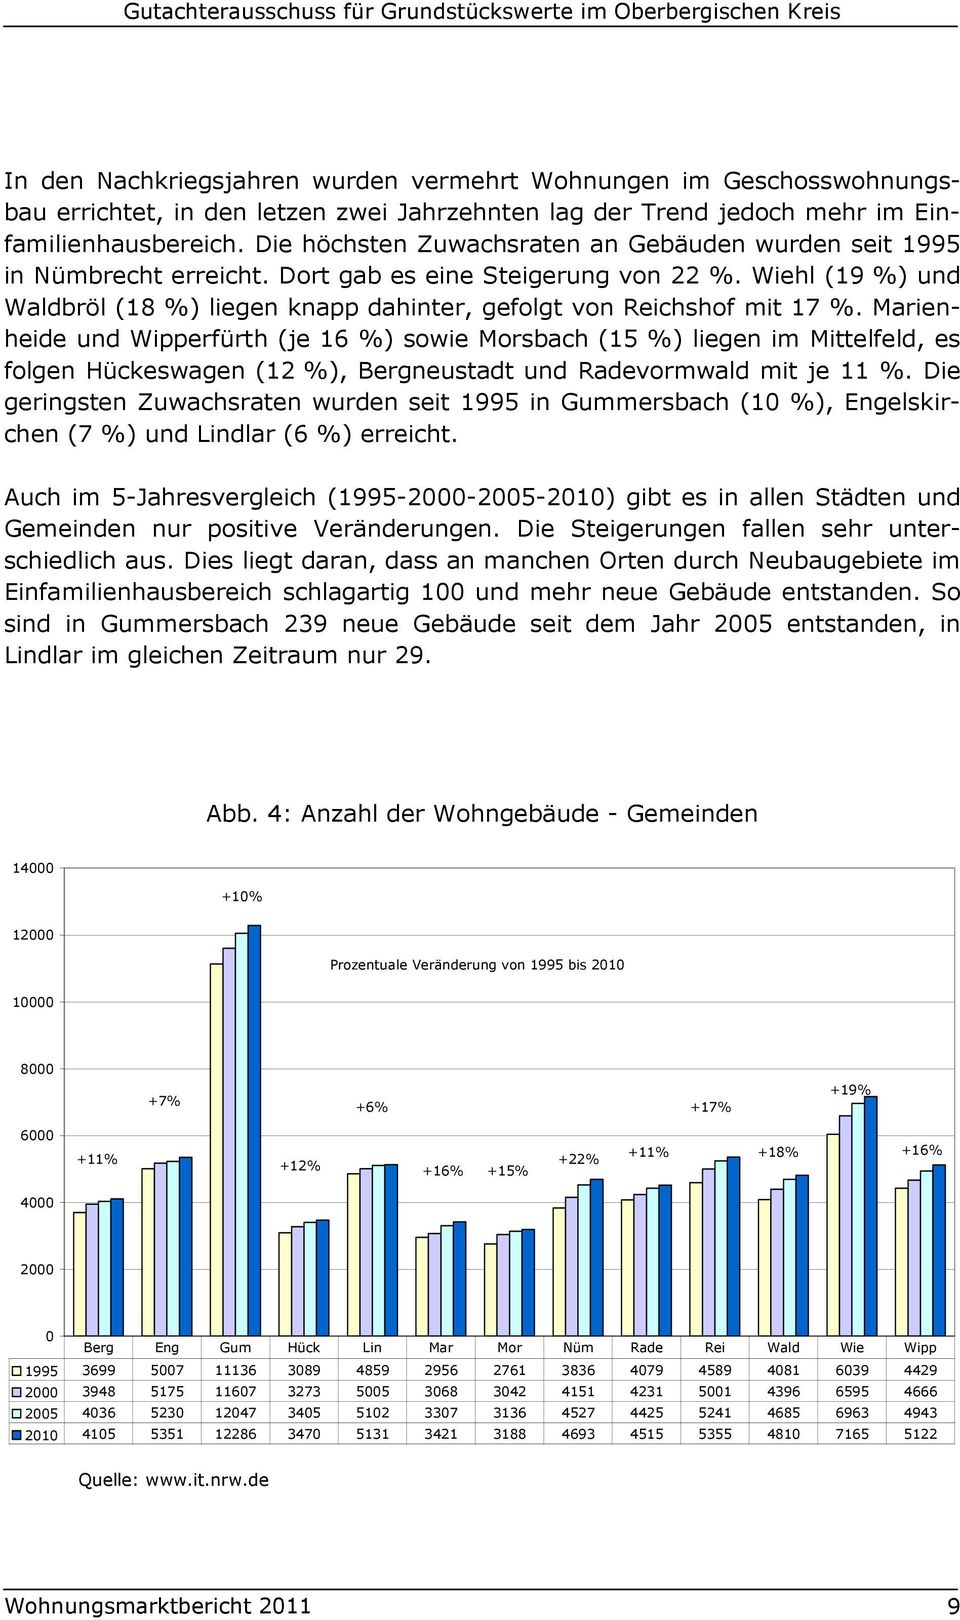 Wiehl (19 %) und Waldbröl (18 %) liegen knapp dahinter, gefolgt von Reichshof mit 17 %.